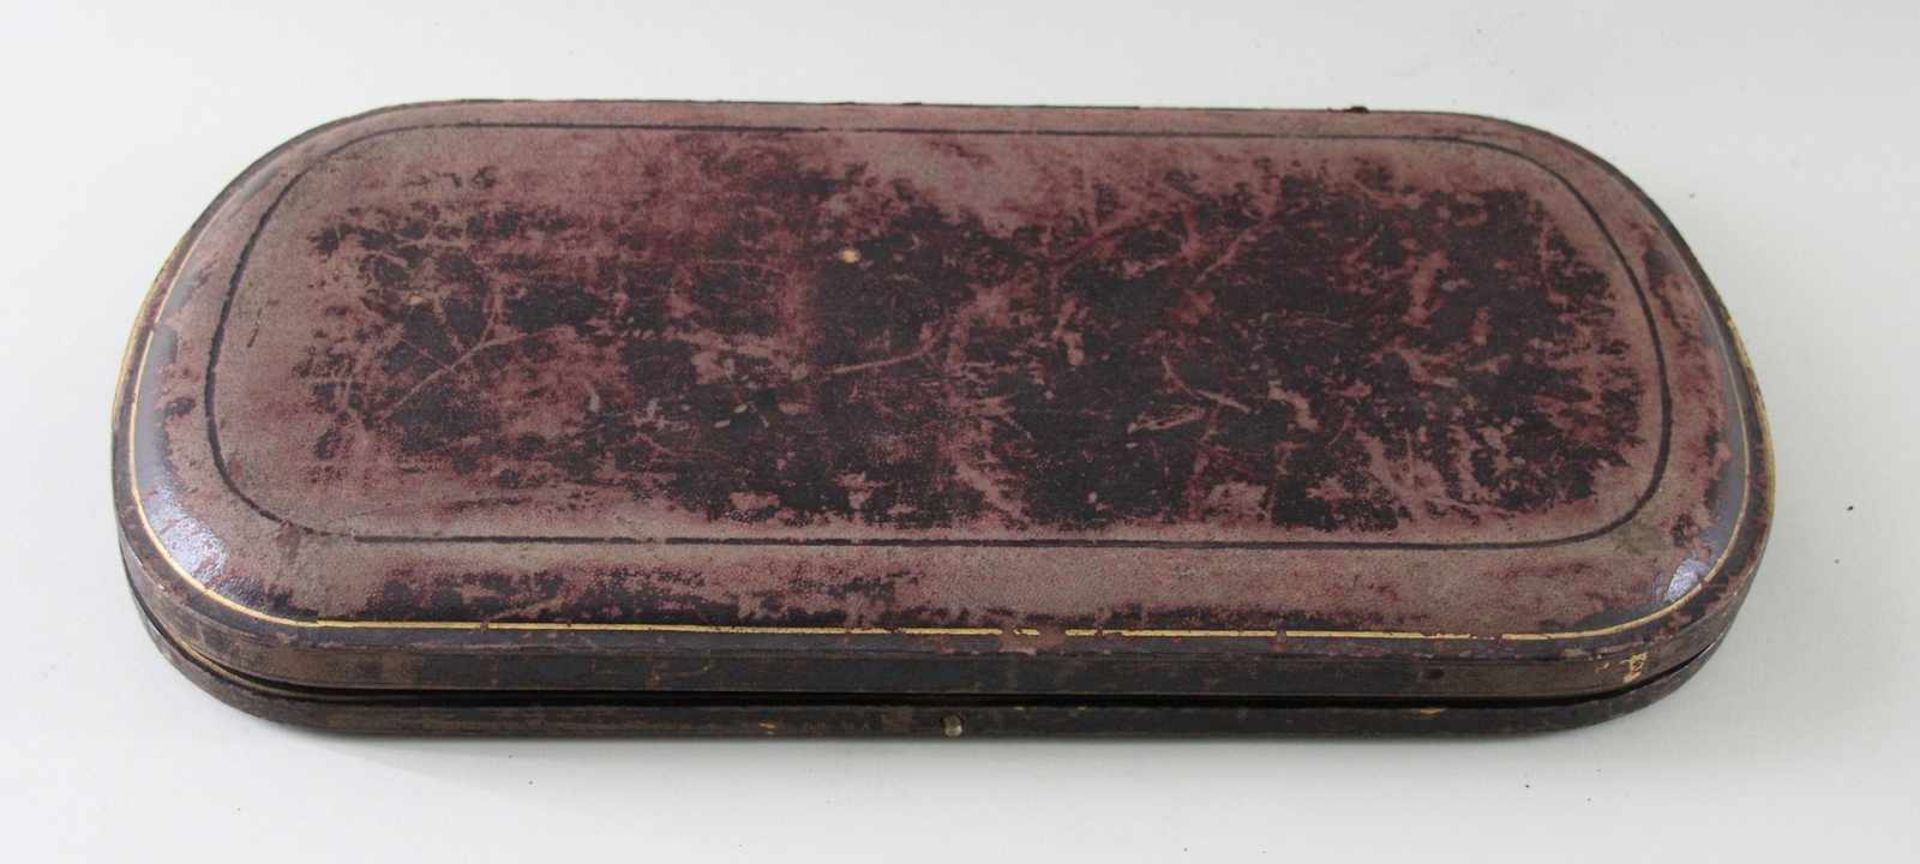 3 tlg. Tranchierbesteck im Karton, London, um 1900, Bestehend aus 1 Tranchiermesser (L: 31cm) 1 - Bild 2 aus 2